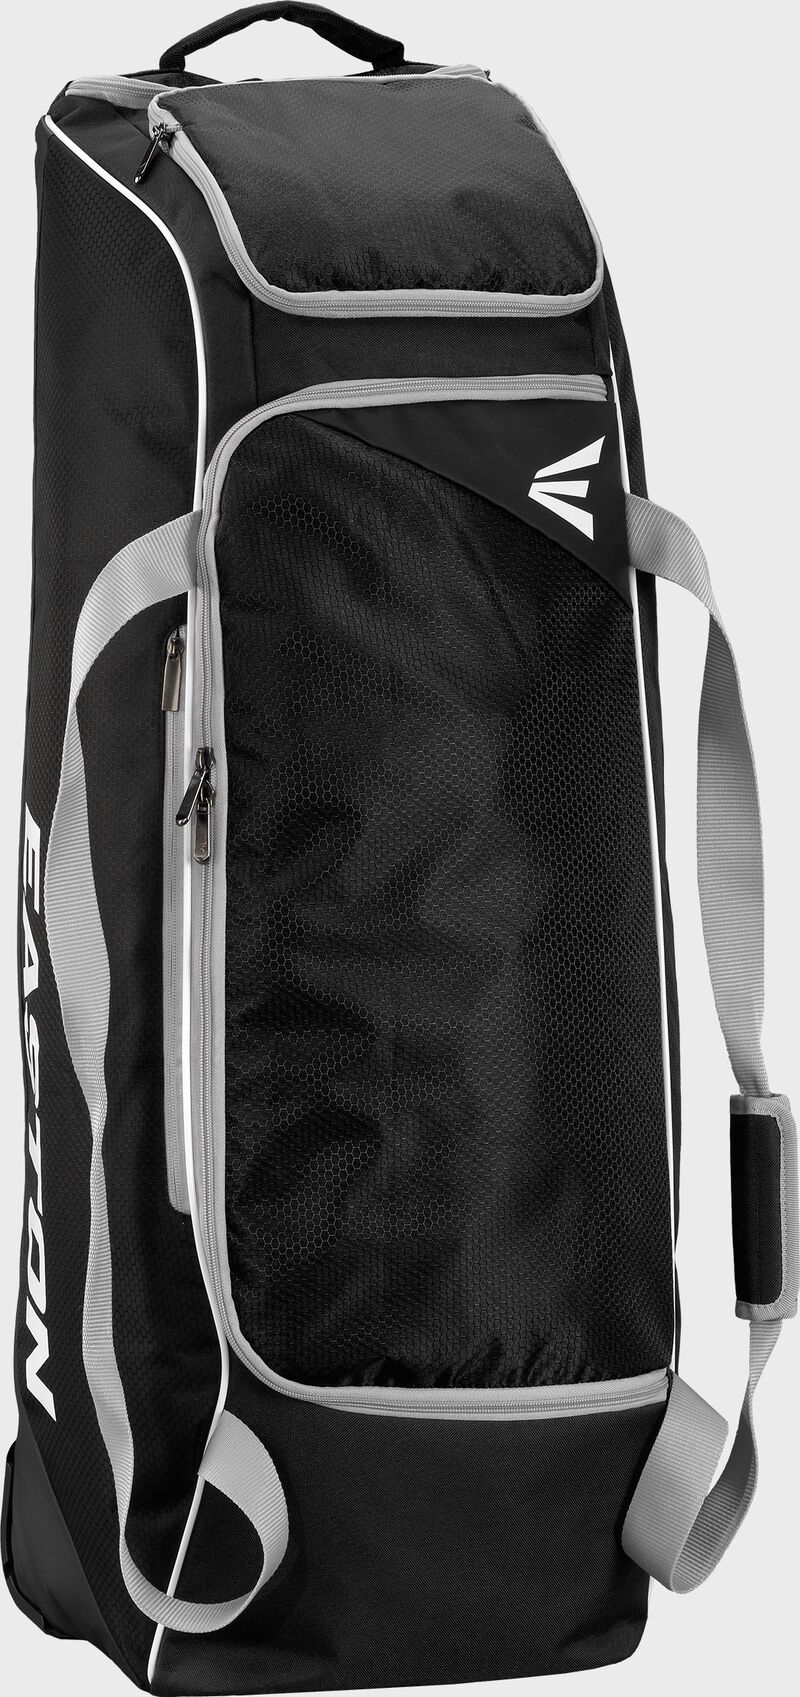 Octane Wheeled Bag | BK